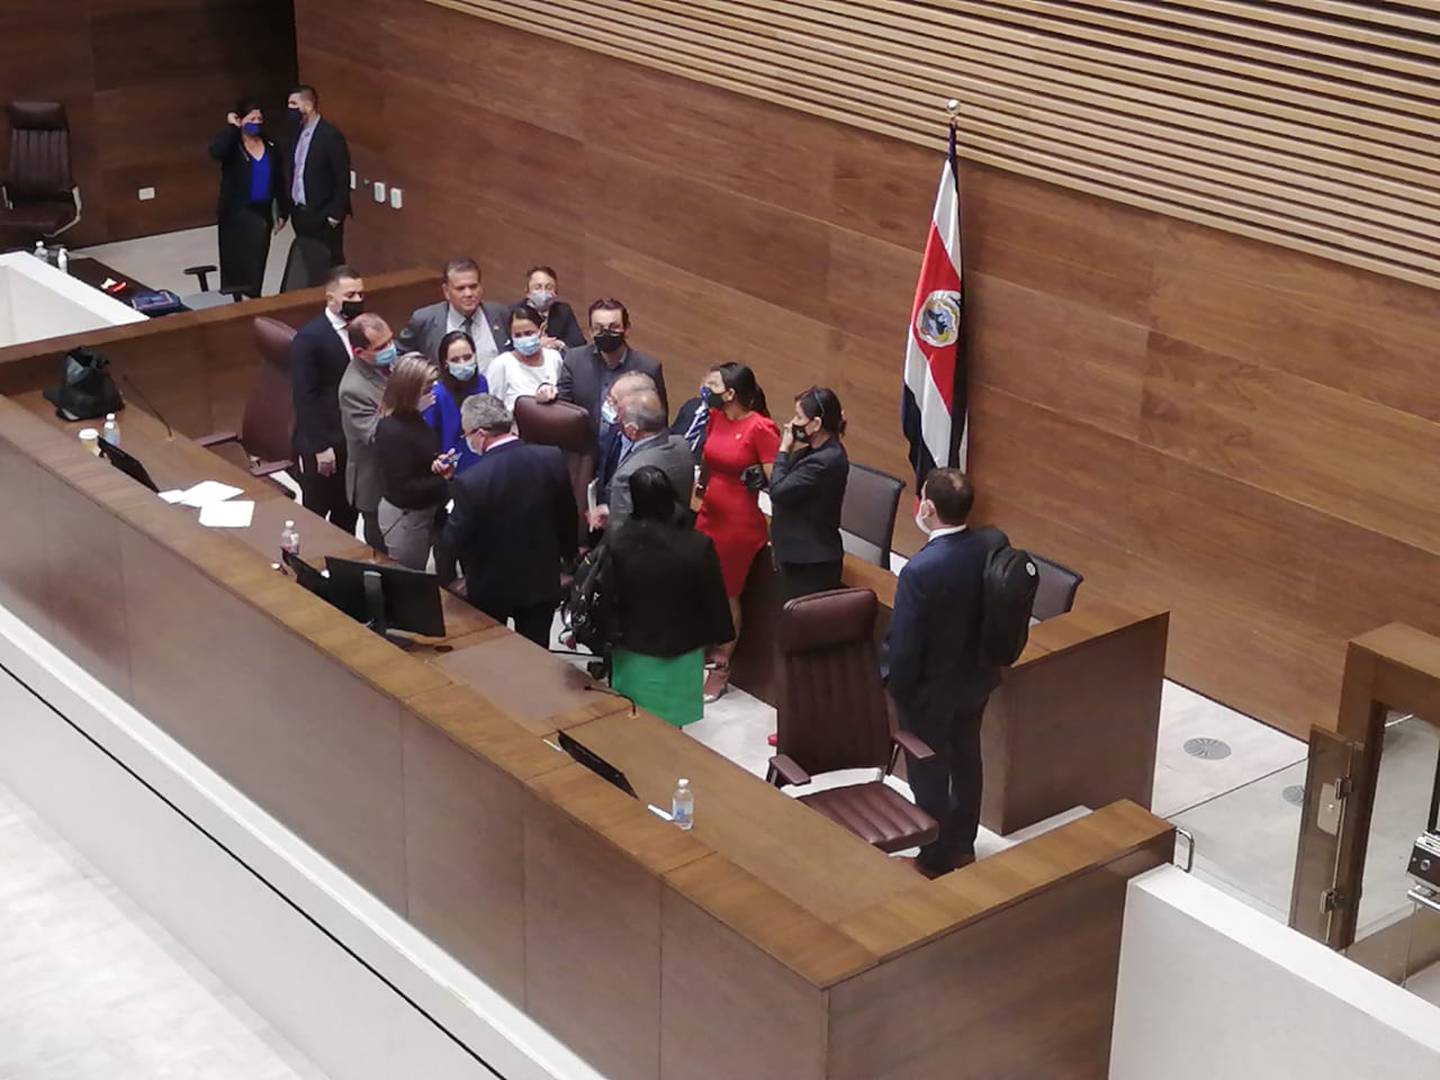 Los diputados quienes llegaron tarde al plenario le reclamaron al liberacionista Jorge Fonseca, presidente en ejercicio de la Asamblea Legislativa. Foto: Aarón Sequeira.